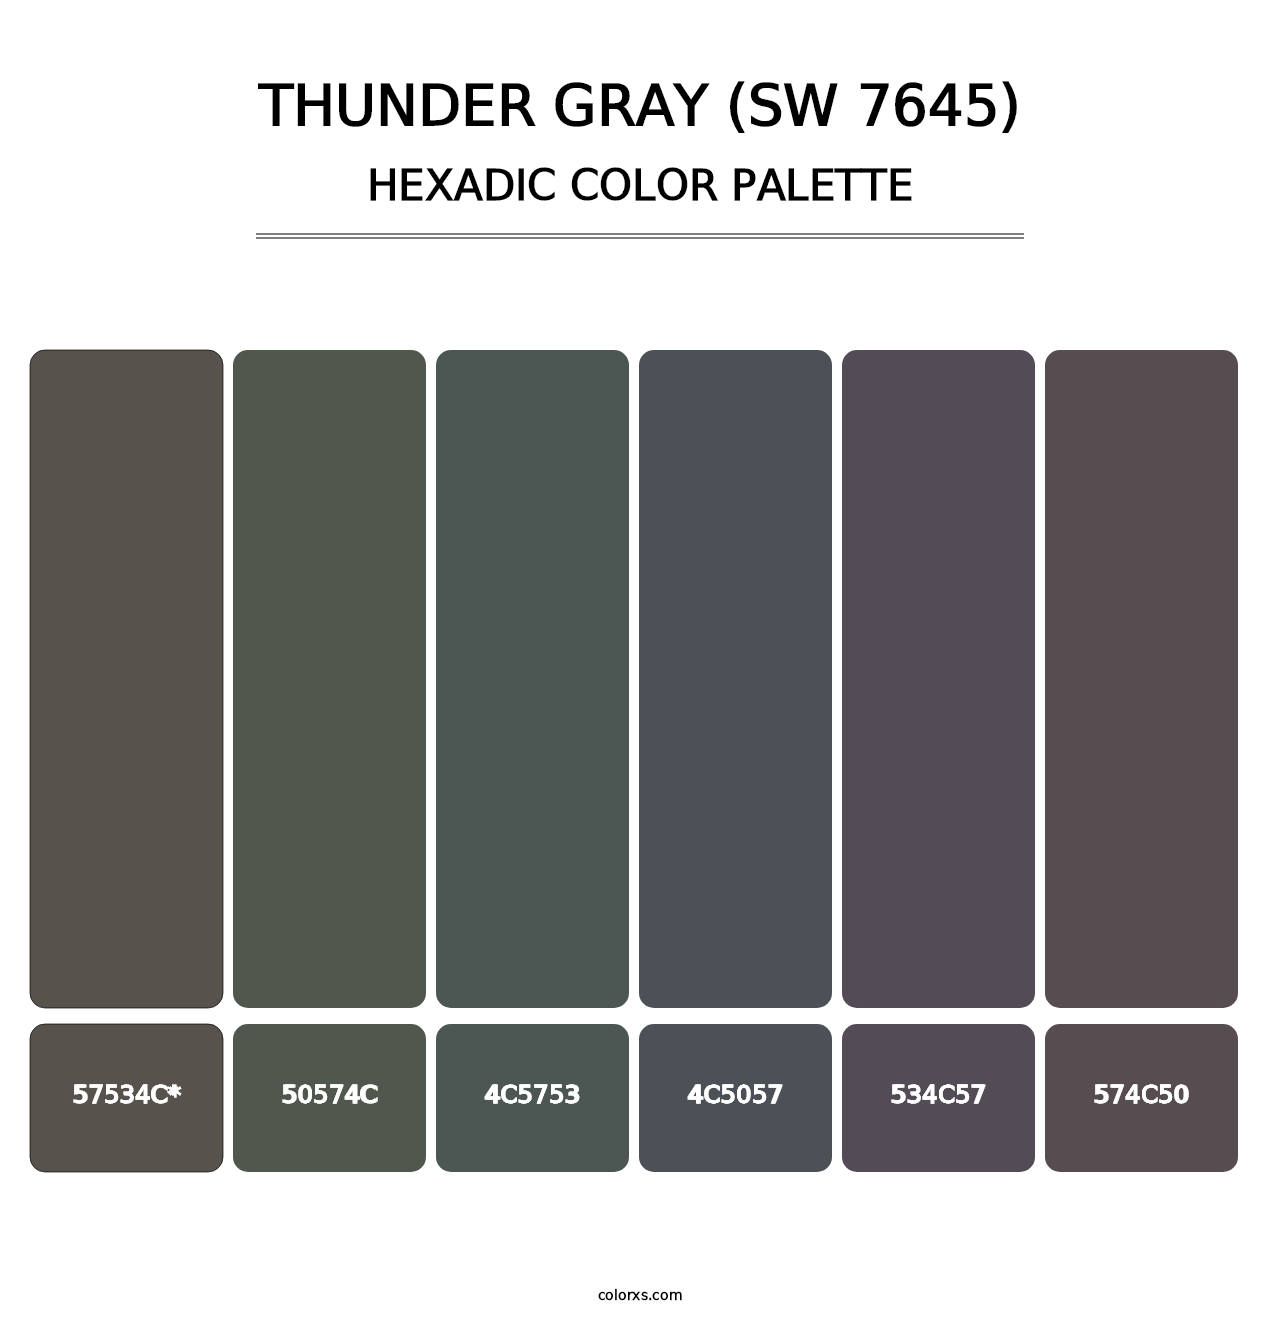 Thunder Gray (SW 7645) - Hexadic Color Palette